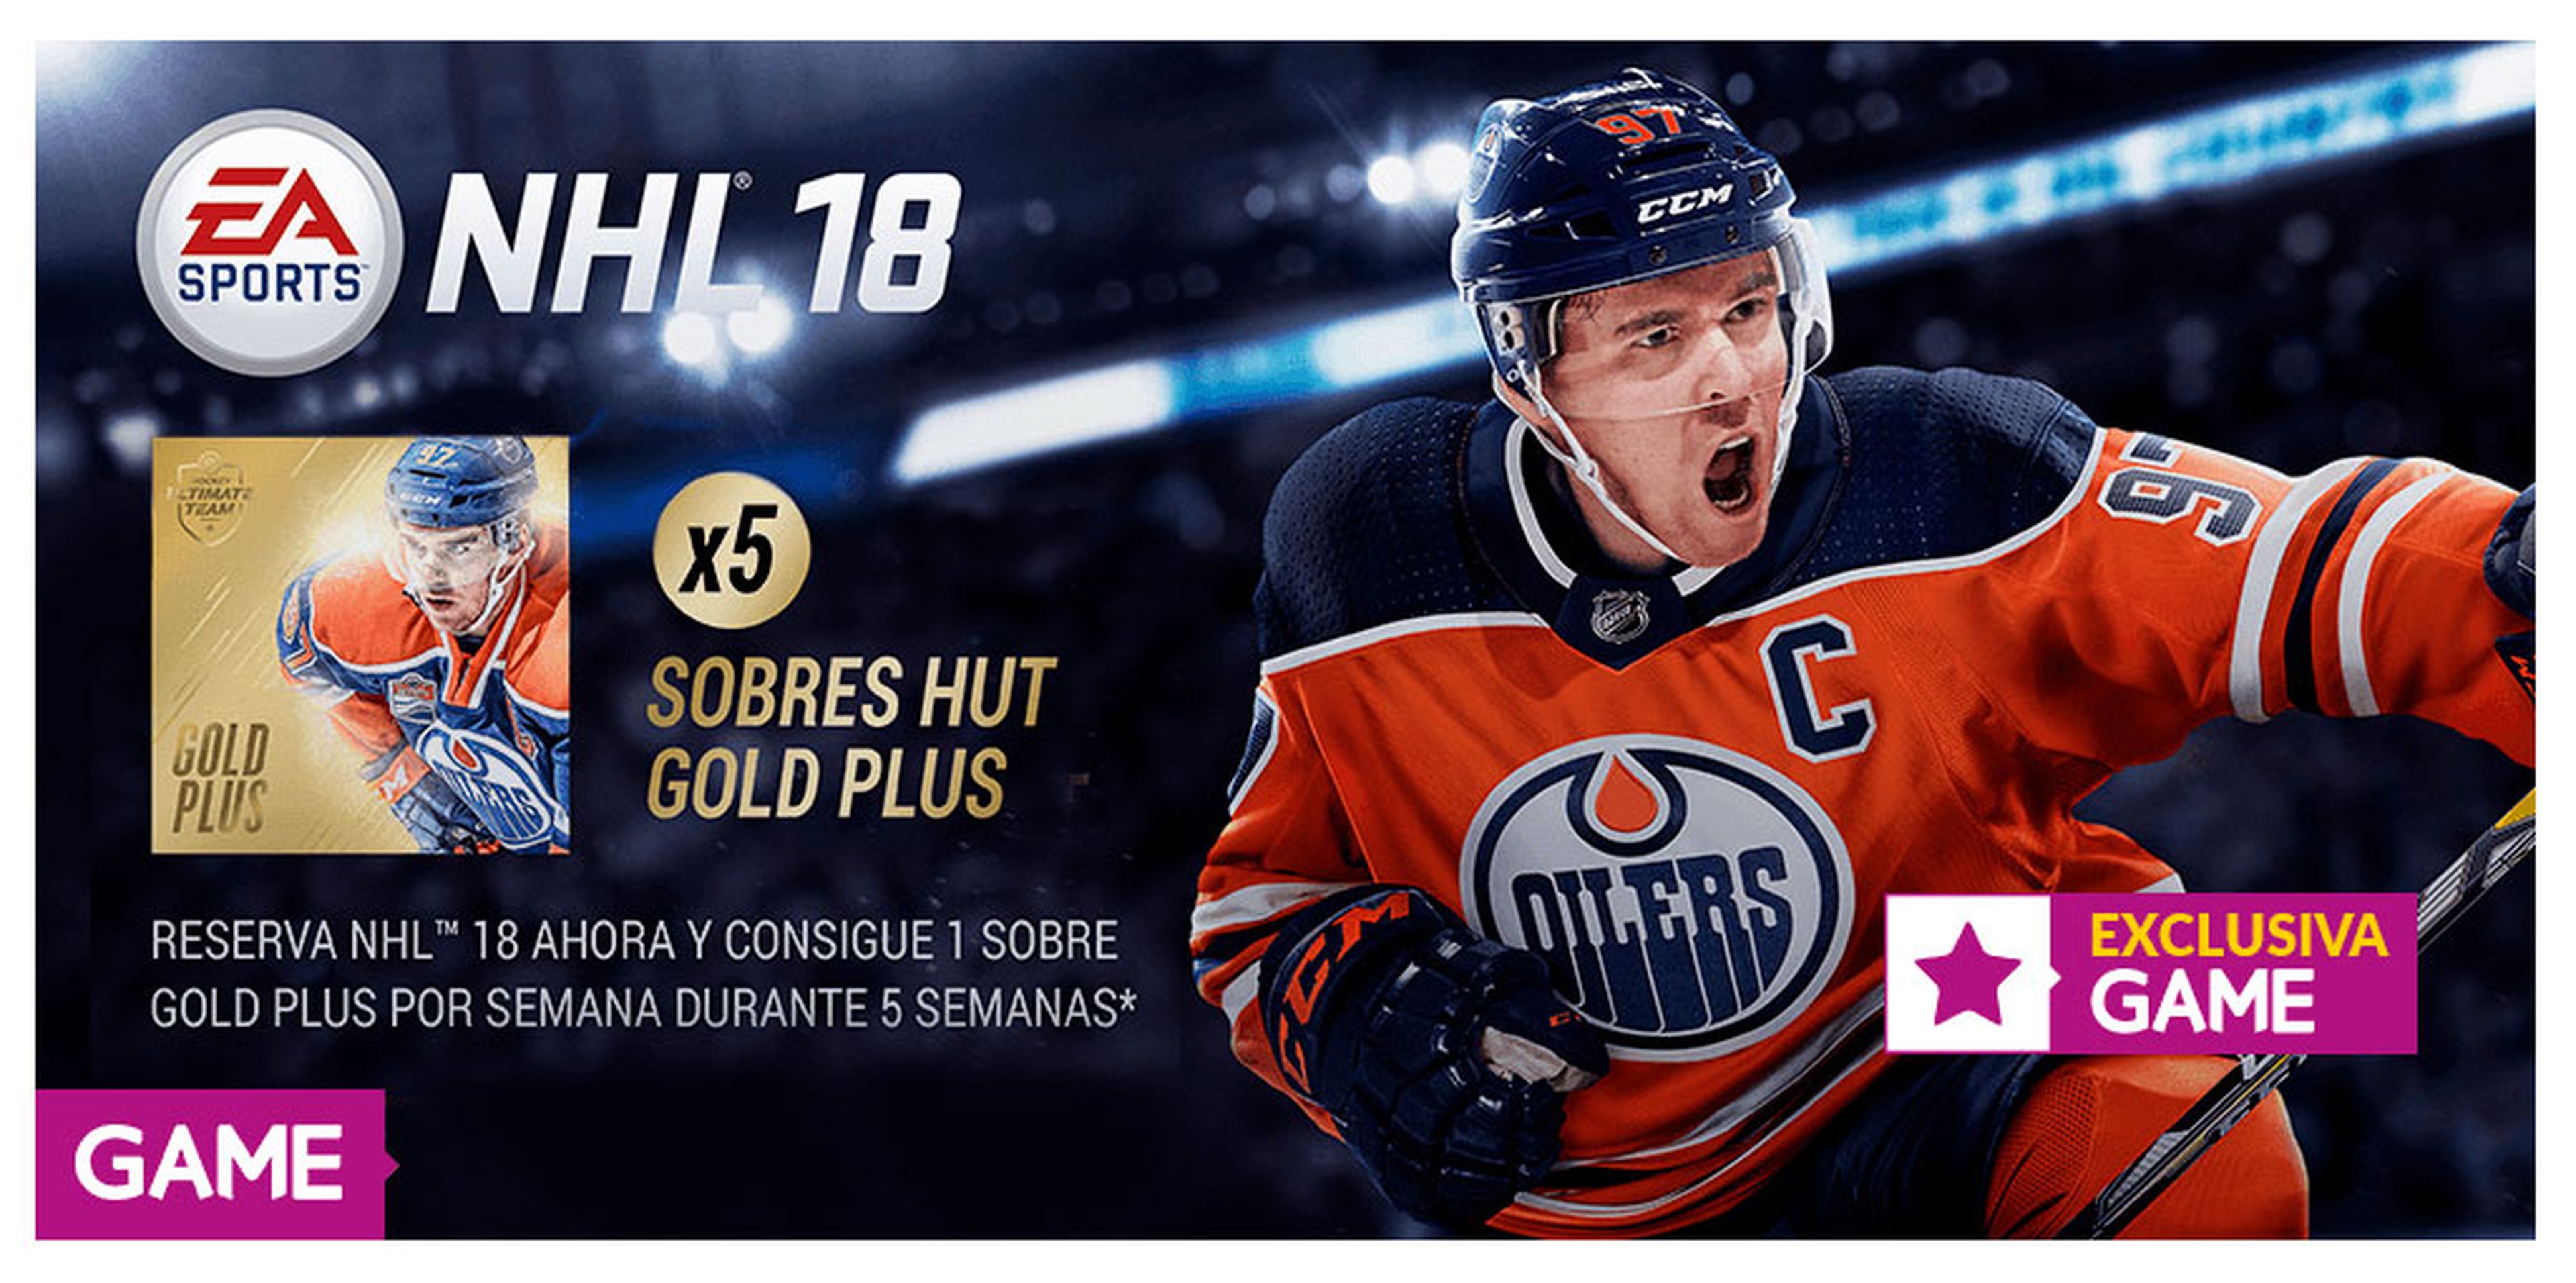 NHL 18 GAME